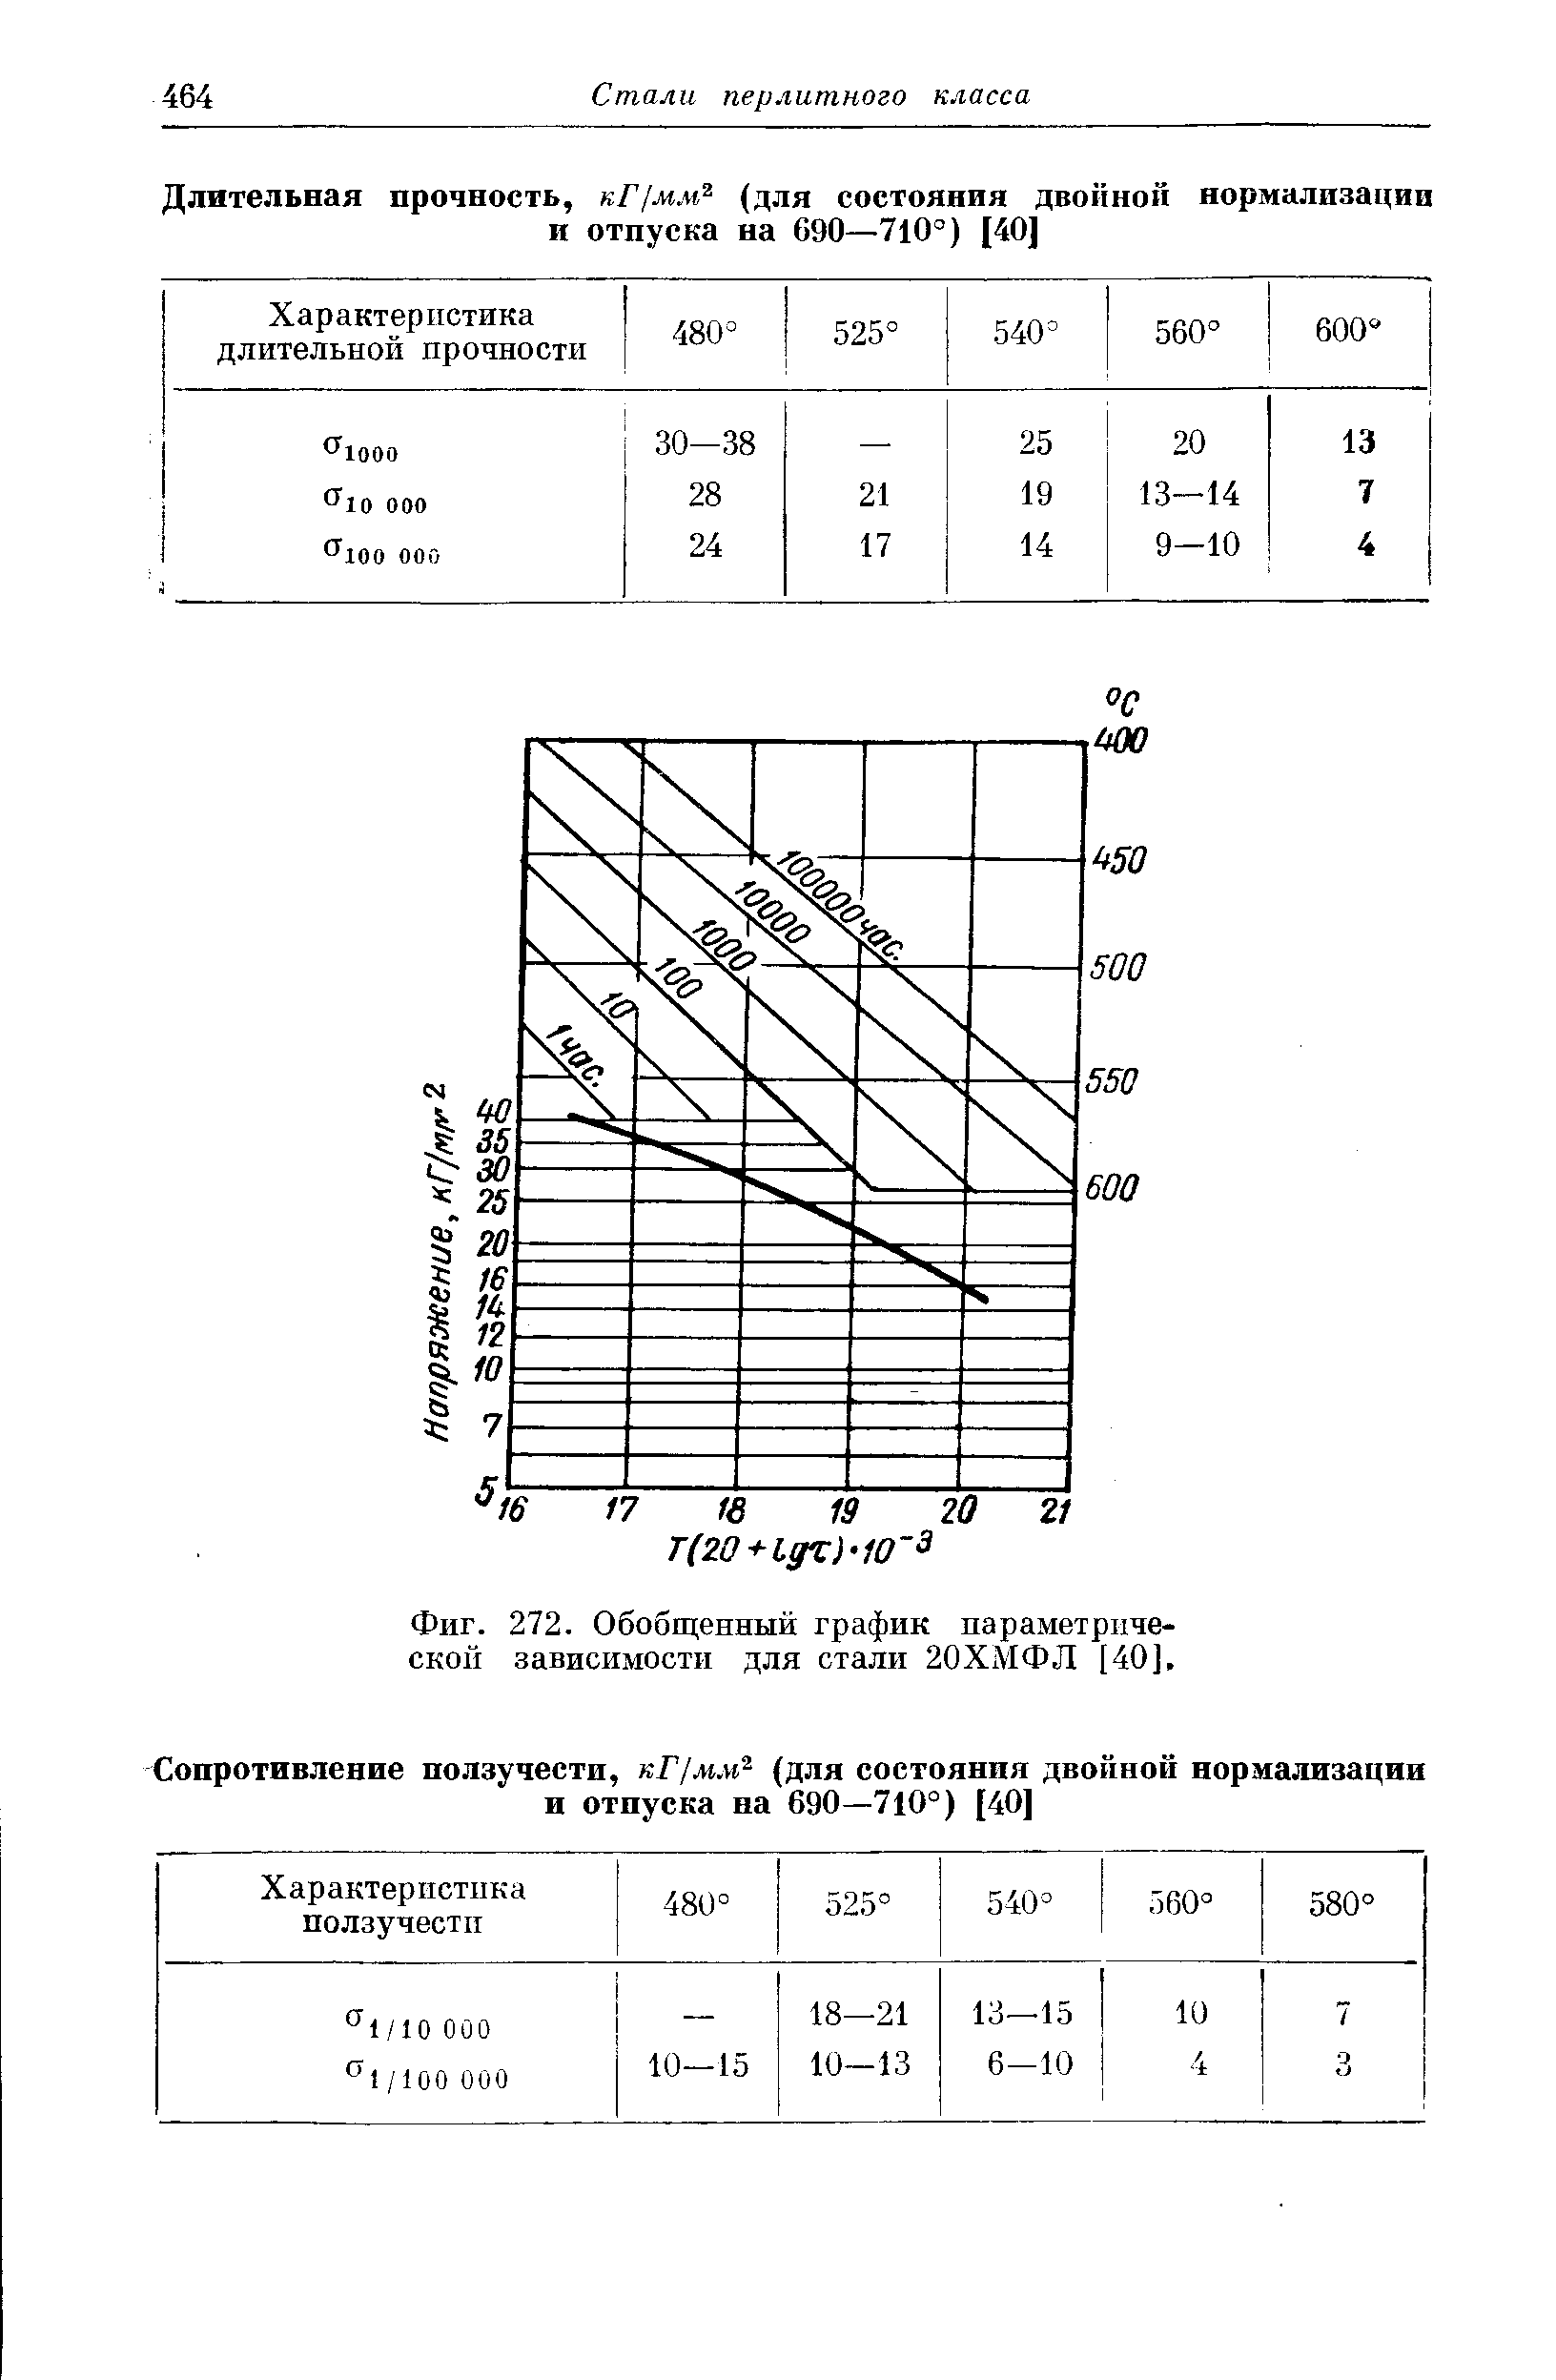 Фиг. 272. Обобщенный график параметрической зависимости для стали 20ХМФЛ [40],
